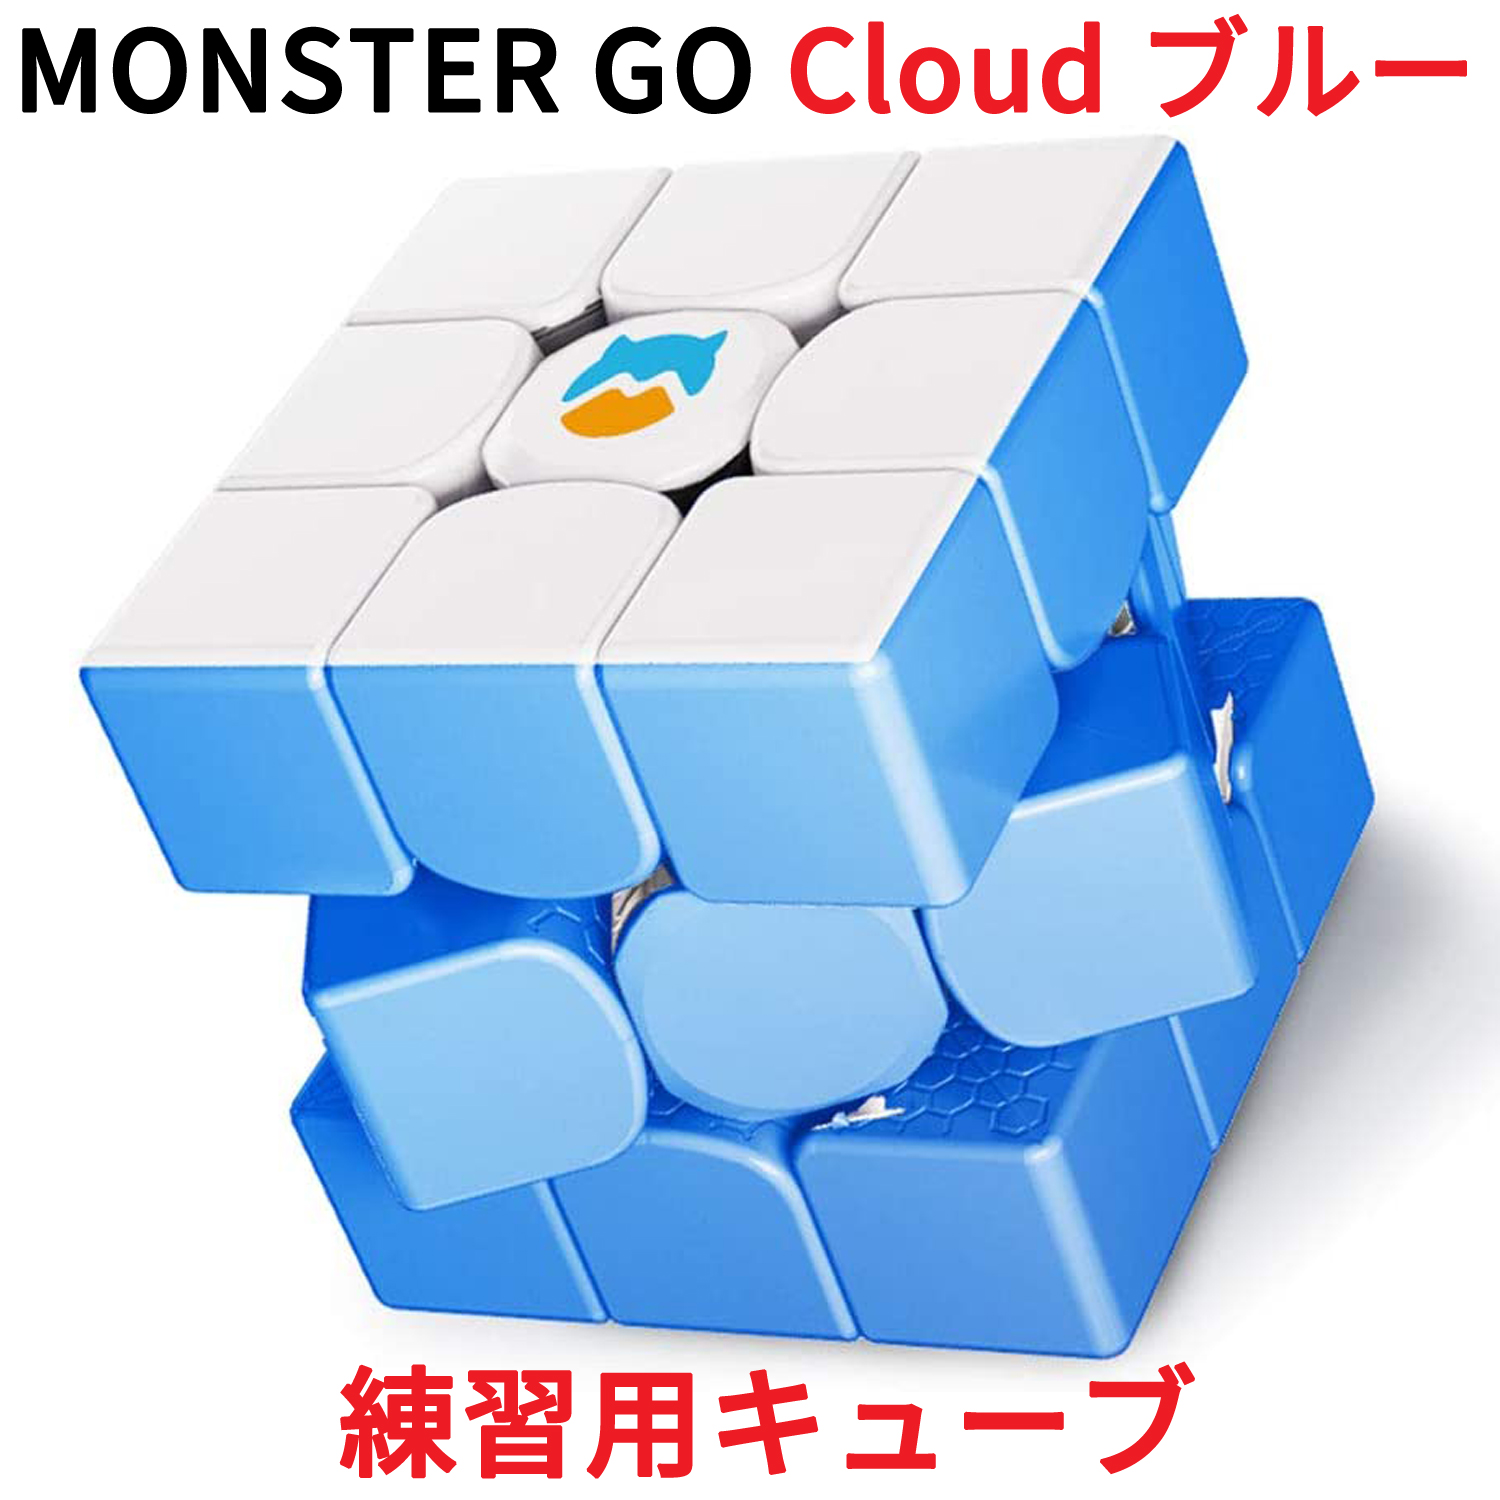 楽天市場 Monster Go Cloud ブルー 3x3 キューブ ステッカーレス Gancube 公式 ガンキューブ モンスターゴー Blue クラウド ルービックキューブ Gan 3x3x3 立体パズル スピードキューブ スマートキューブ マジックキューブ 入門 初心者 プレゼント 知育玩具 誕生日